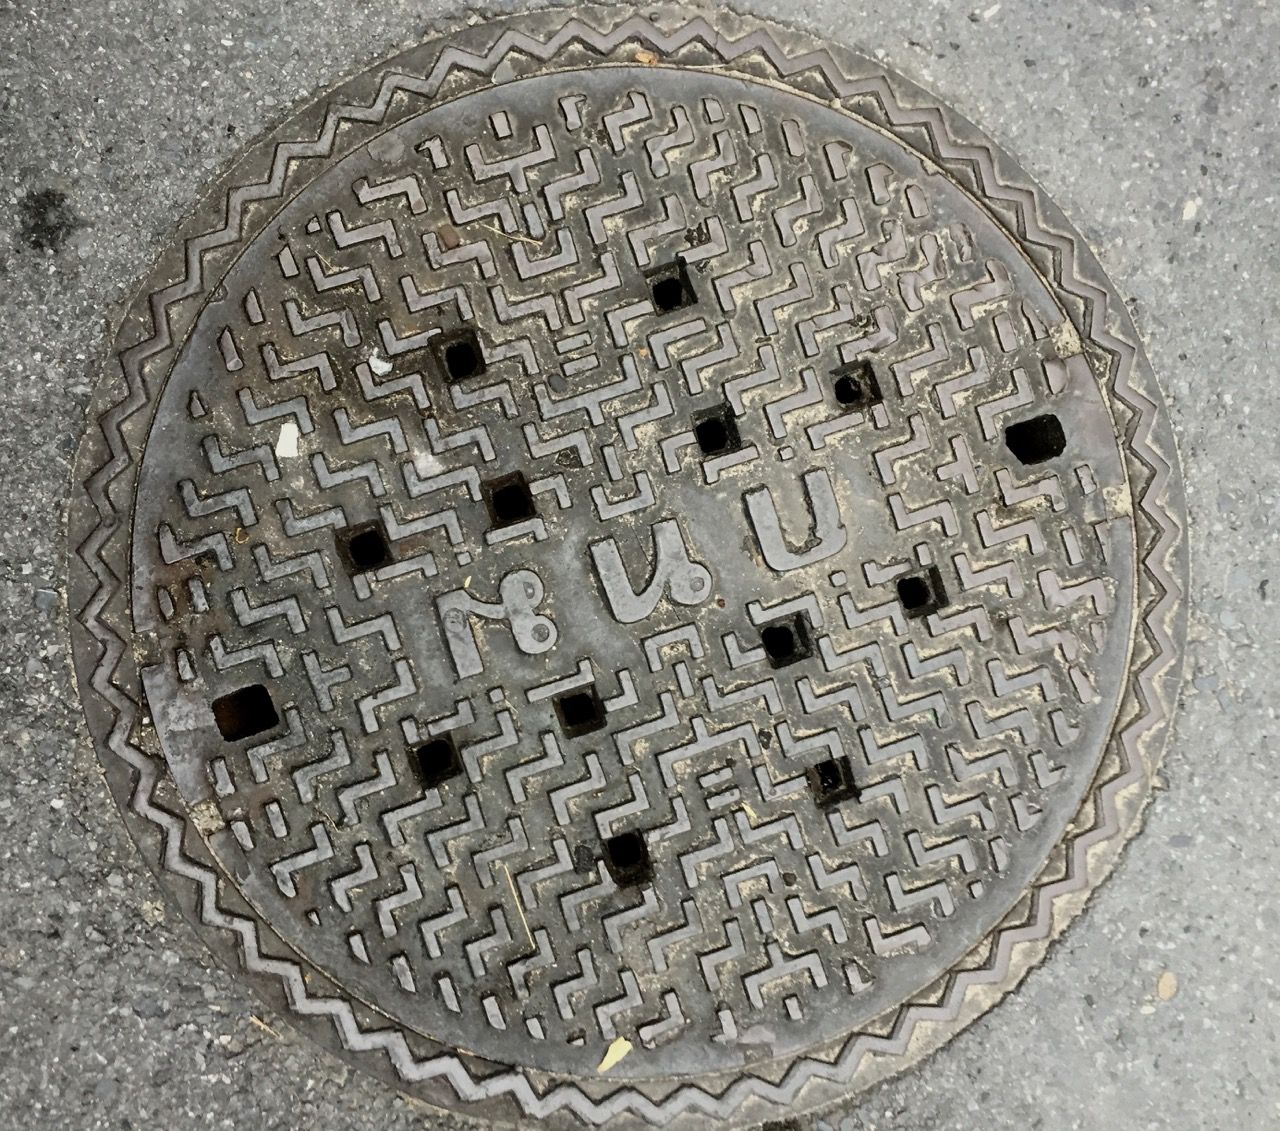 A thai manhole cover.